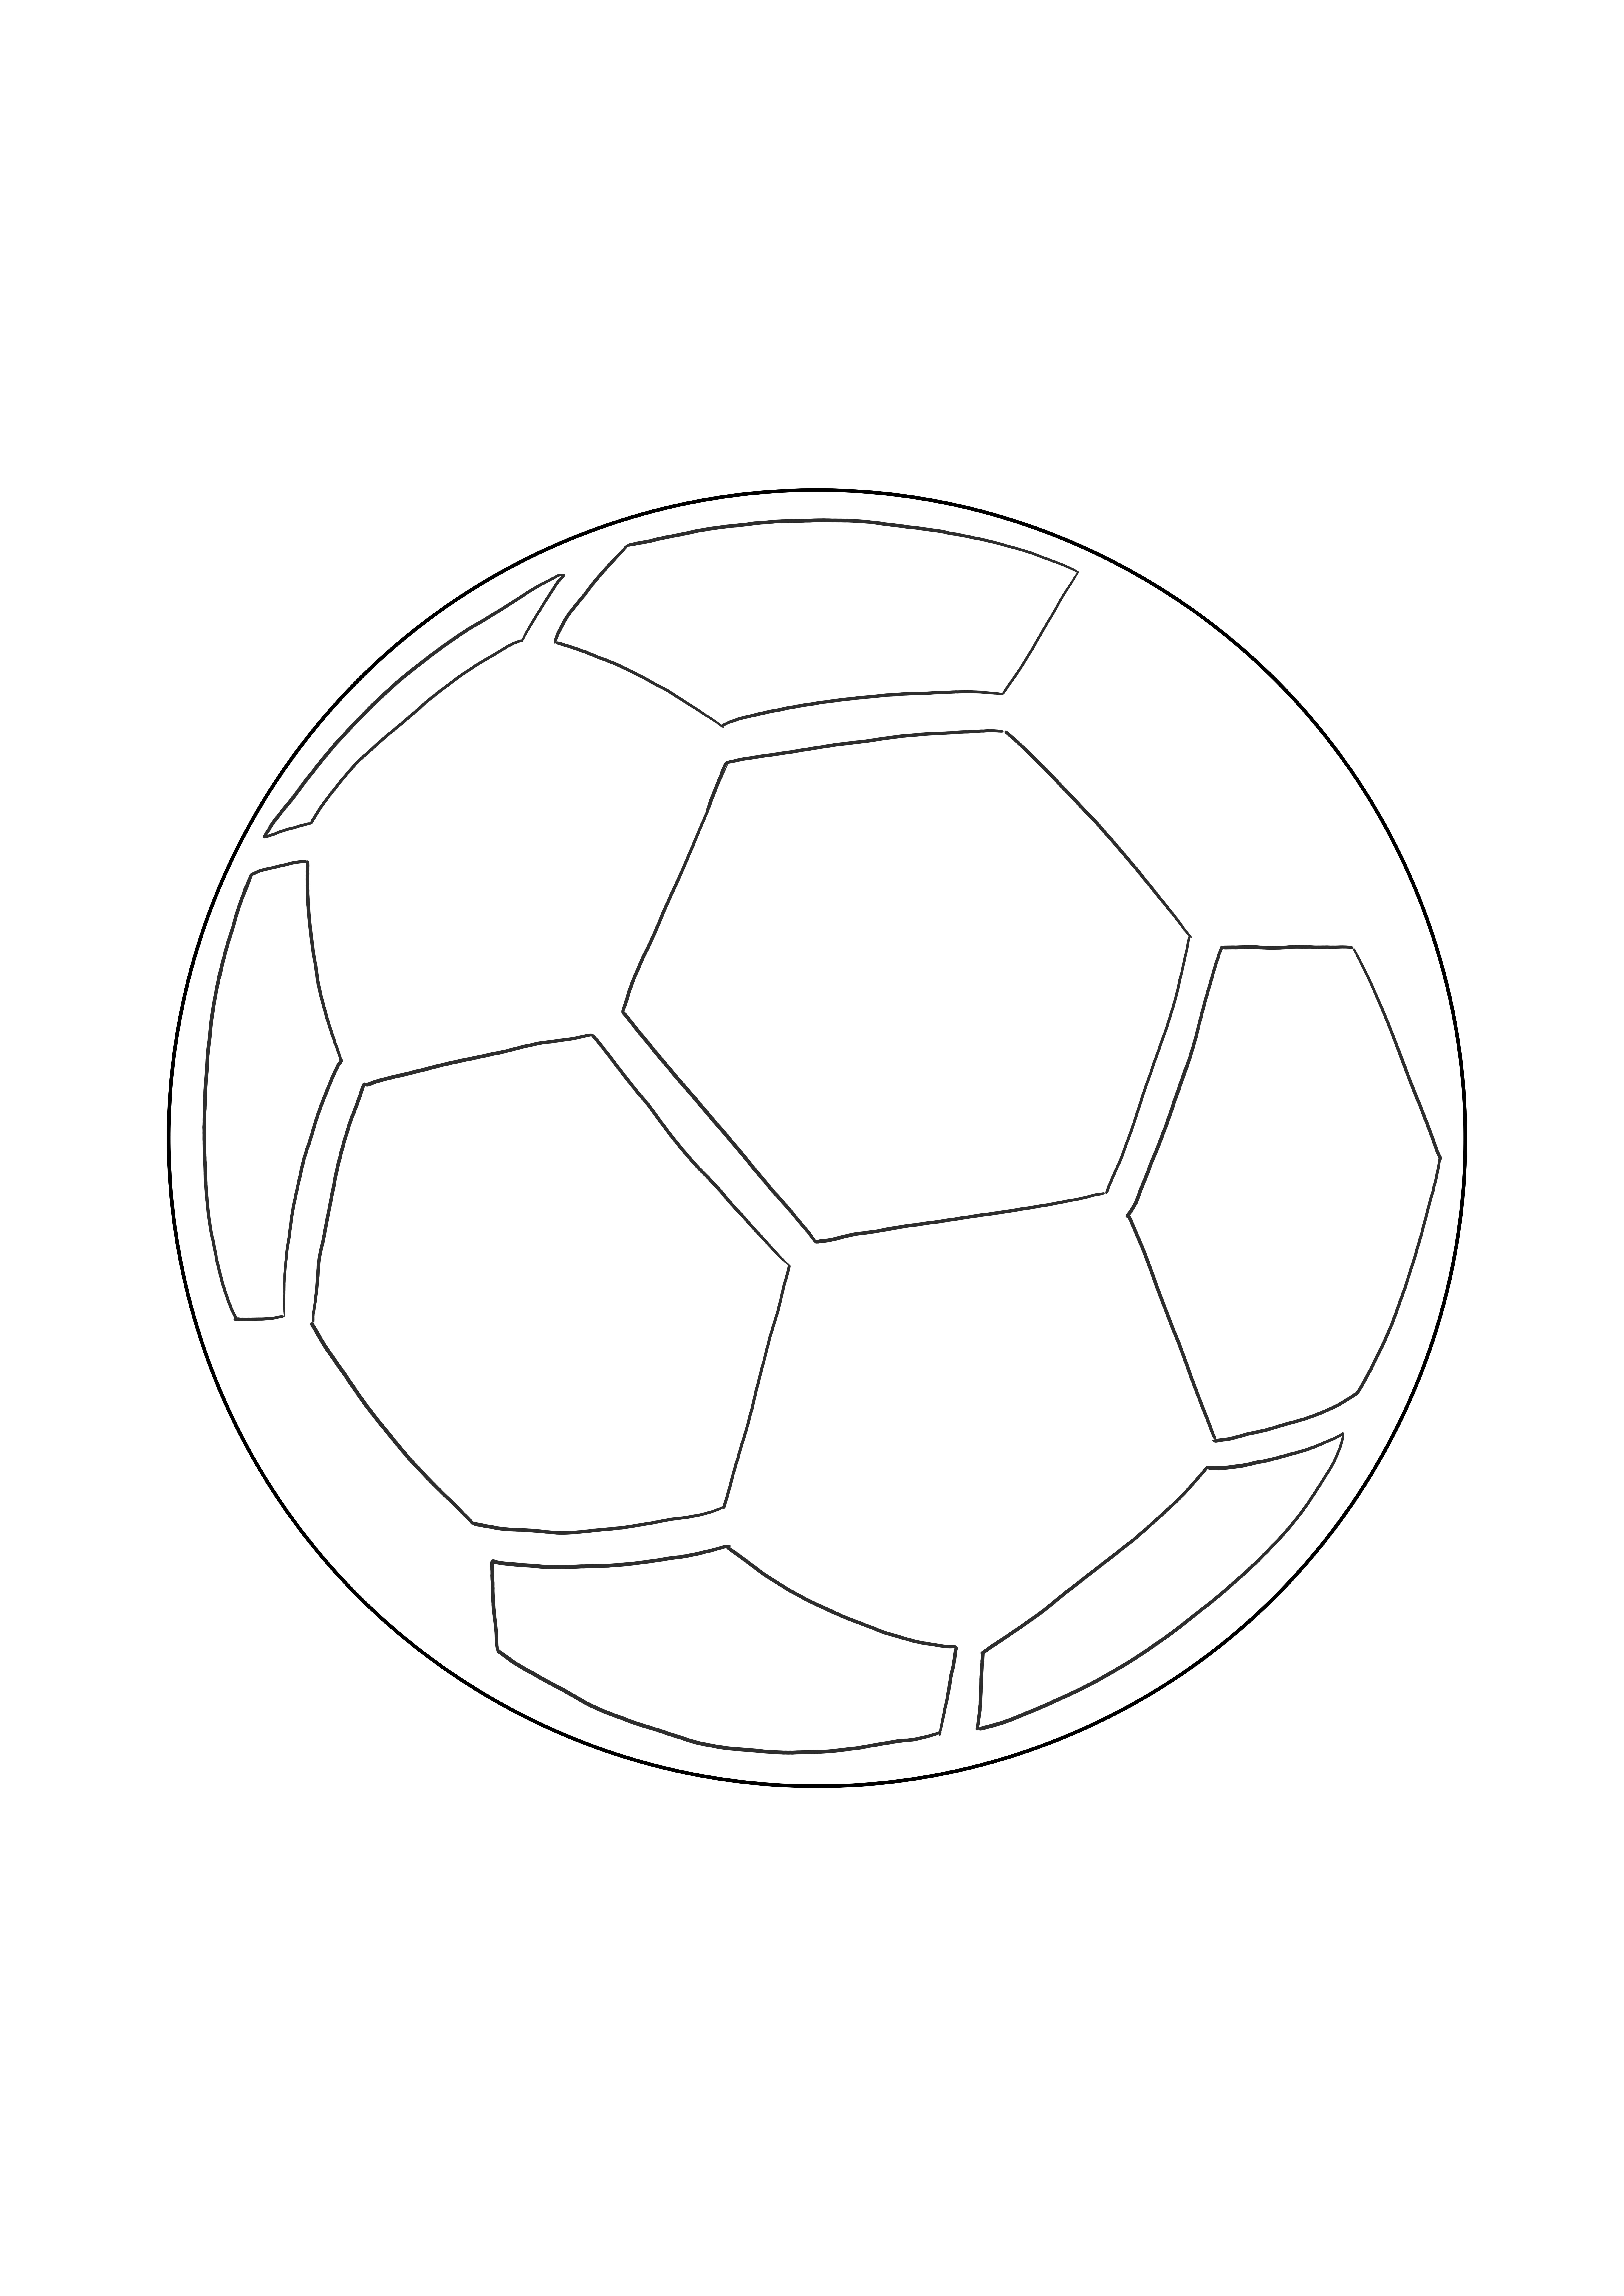 Einfaches Ausmalen eines Fußballs kostenlos zum Ausdrucken oder Herunterladen von Bildern